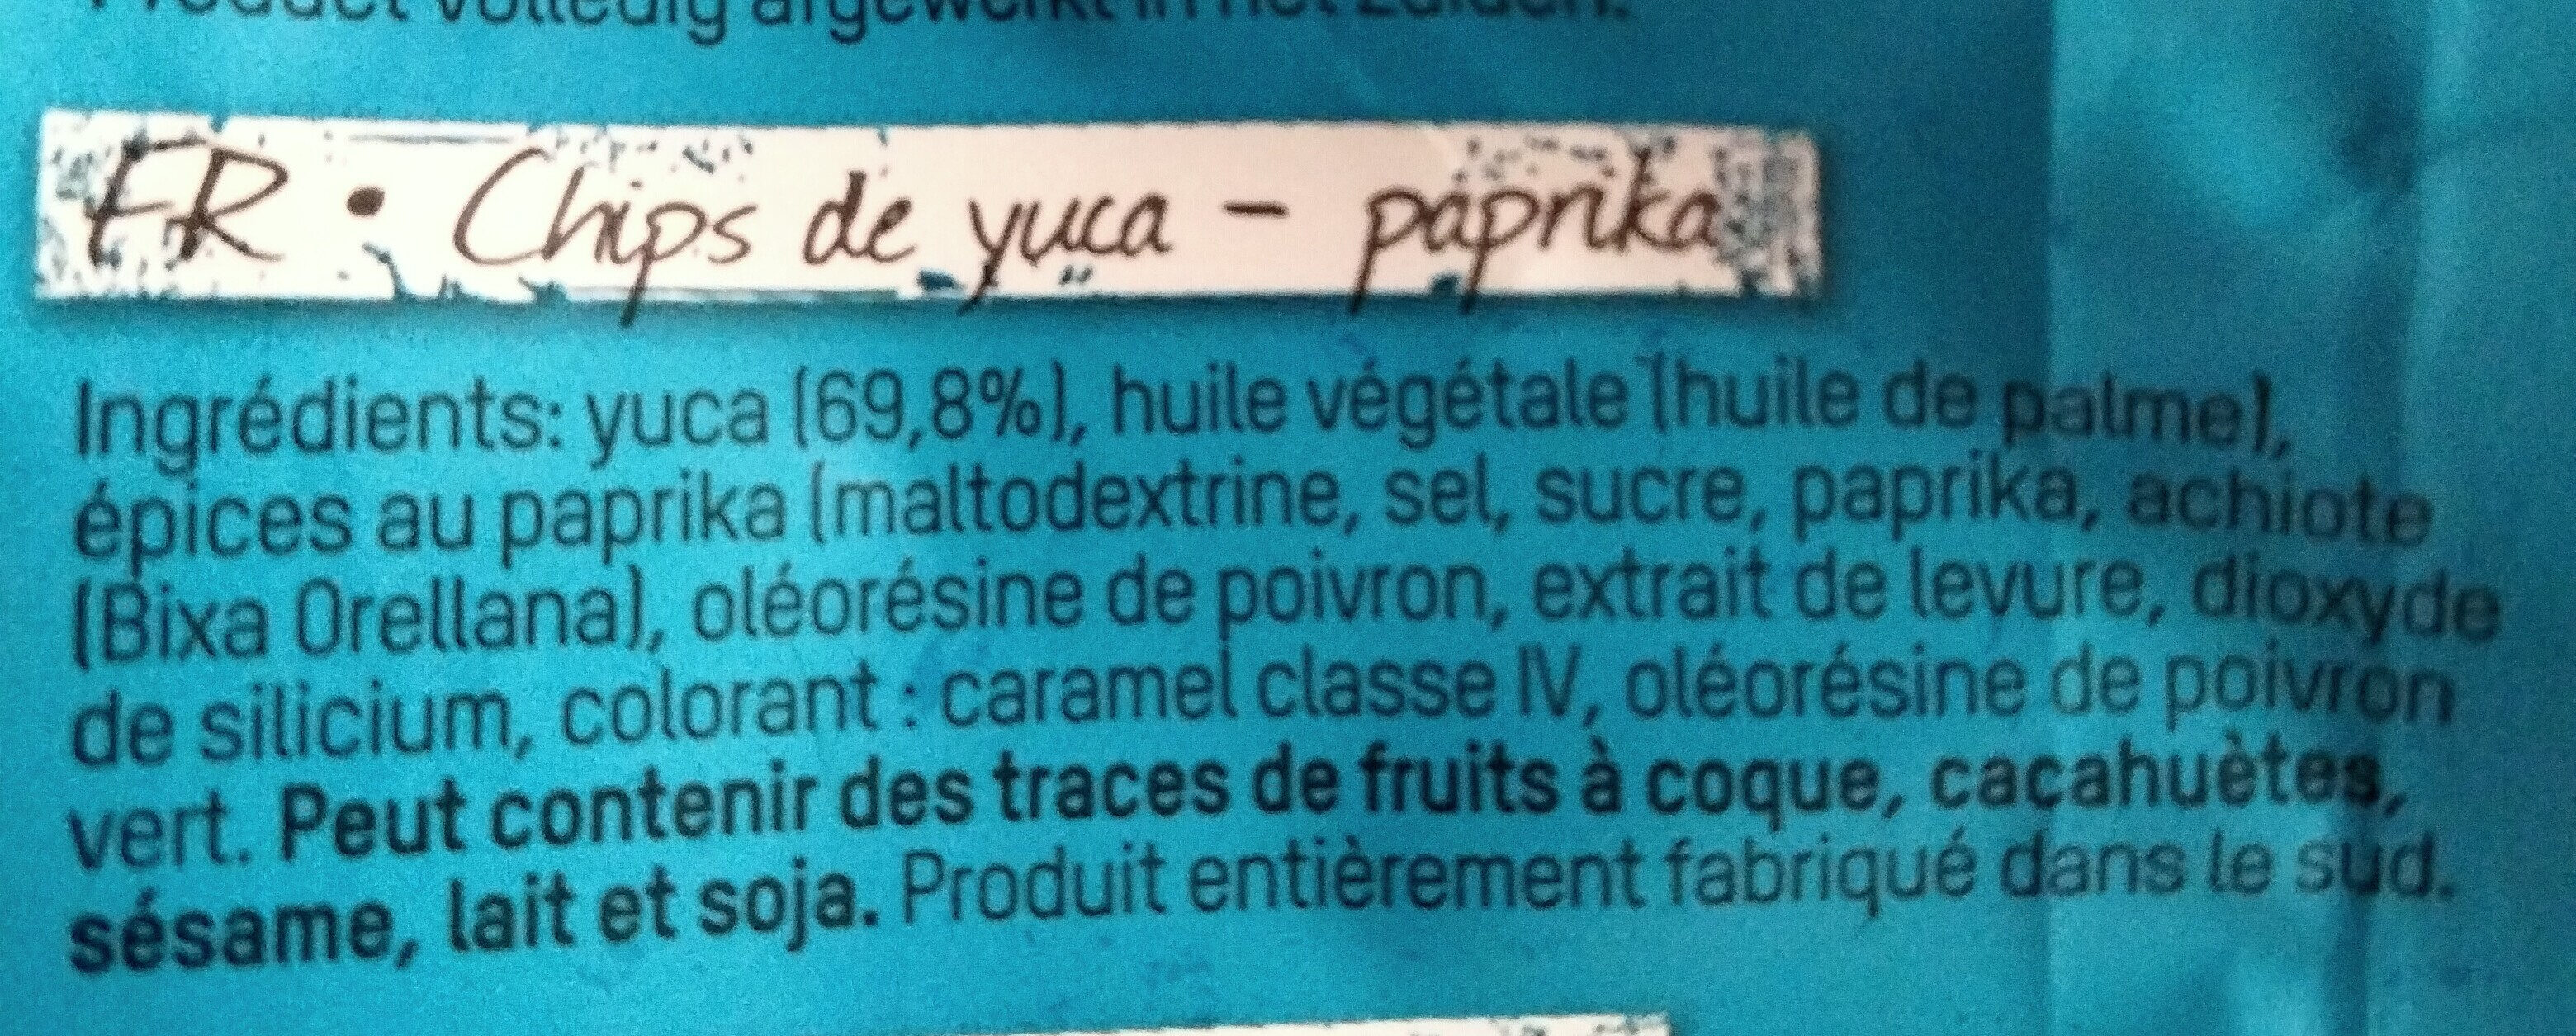 Yuca chips paprika - Ingredients - fr